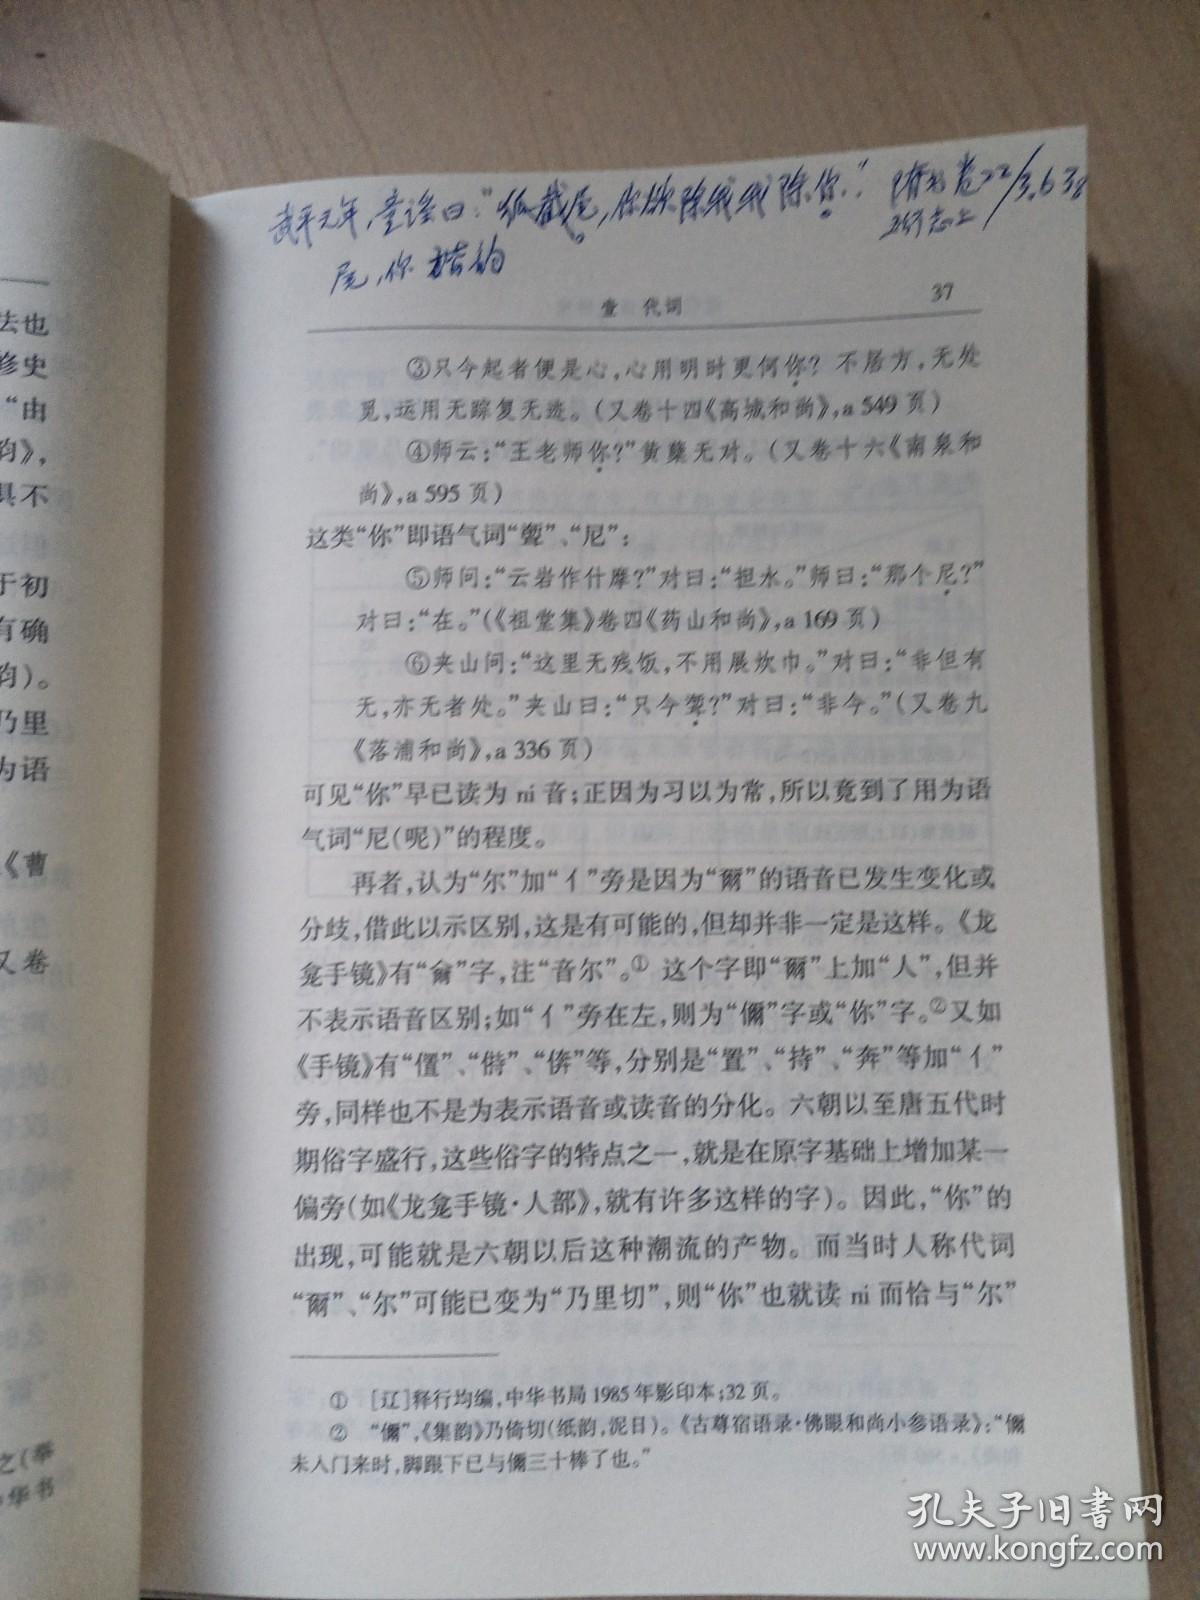 近代汉语语法研究  （作者冯春田签赠本）